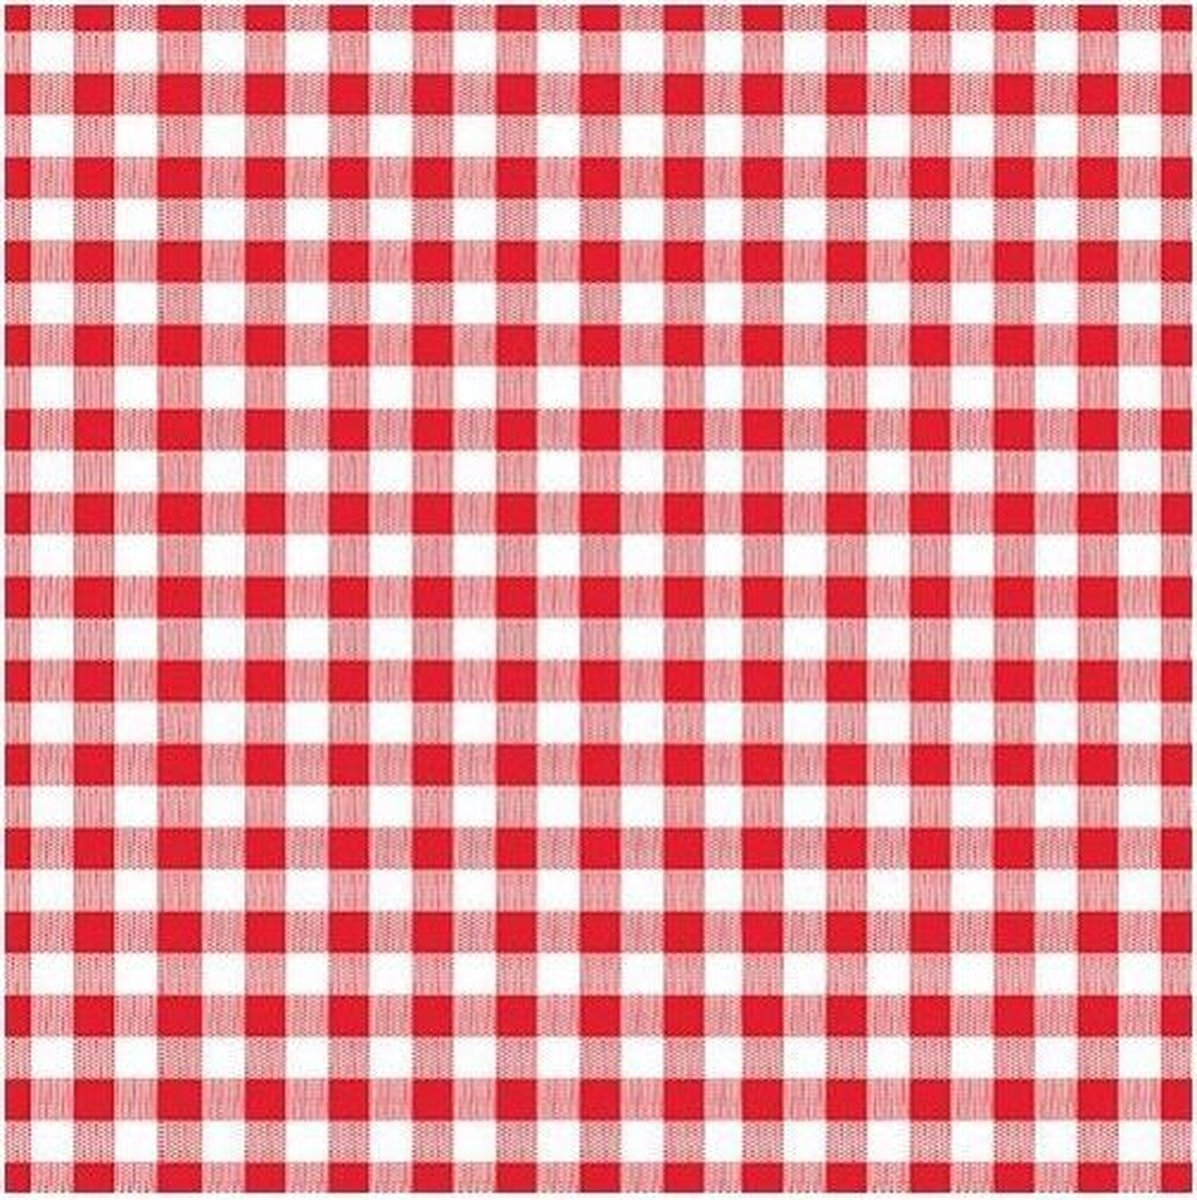 Oktoberfest - 30x rood met wit geruite servetten 33 x 33 cm -- Papieren wegwerp servetjes - Feest versieringen/decoraties - Merkloos